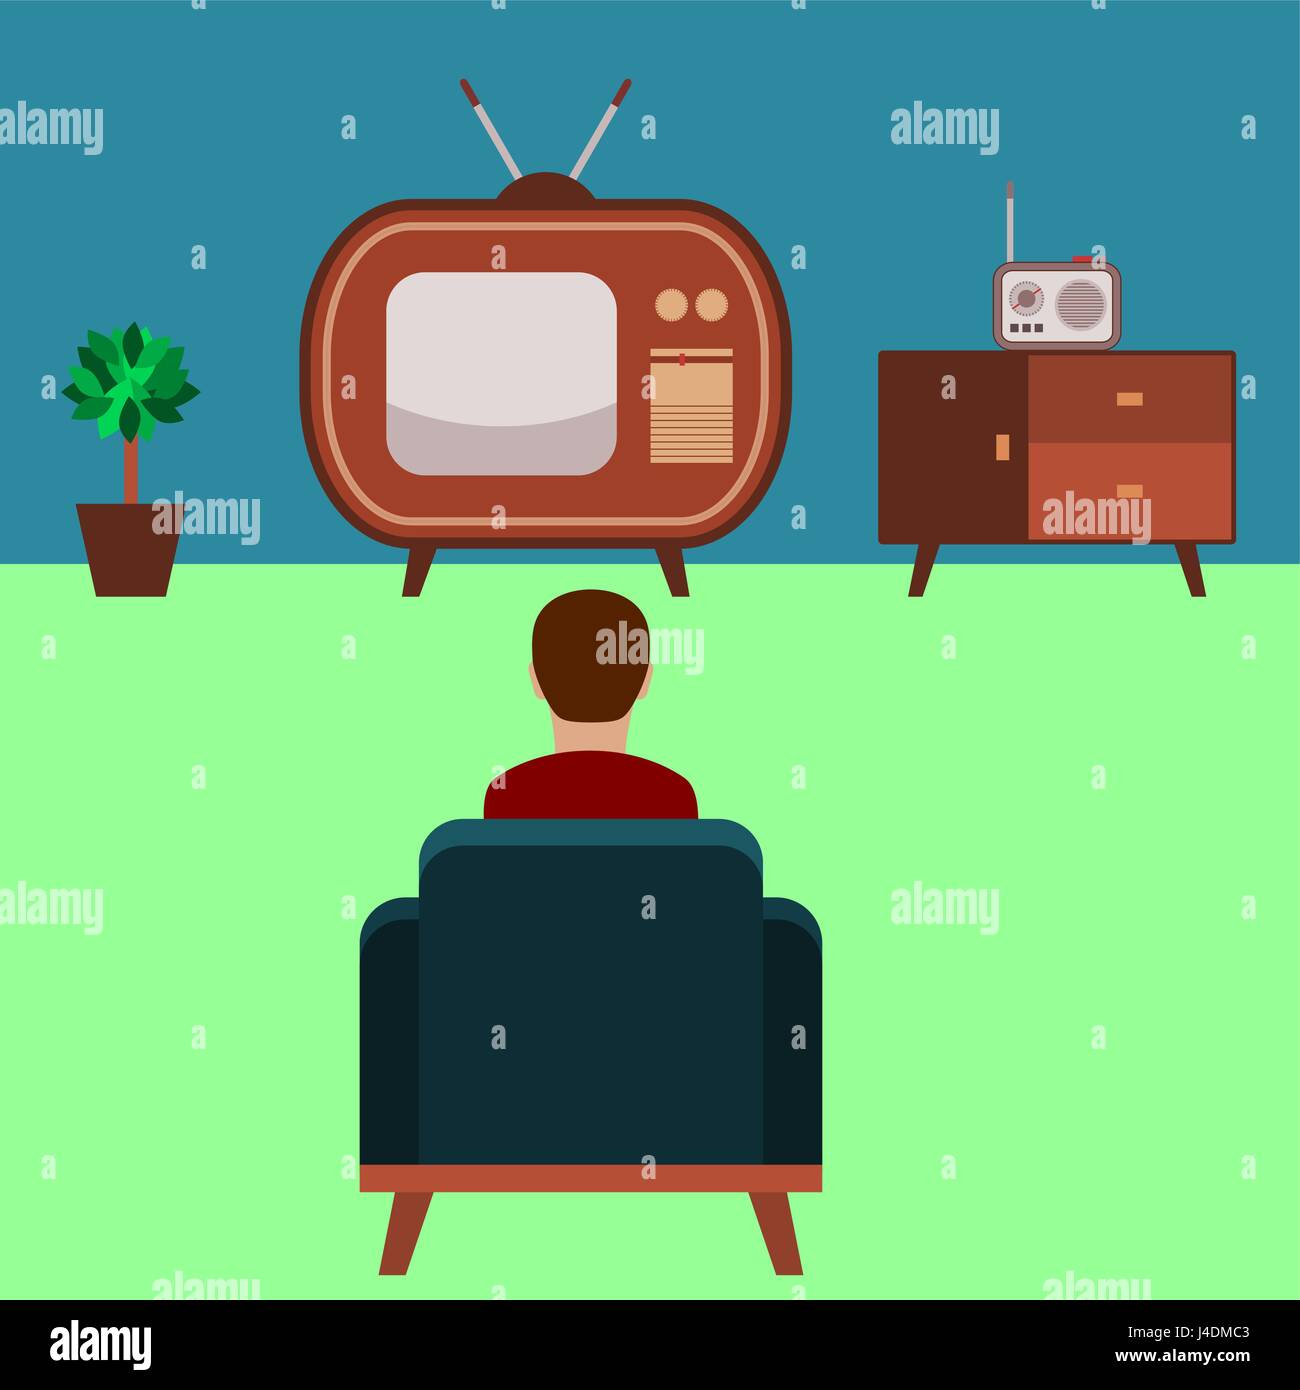 Regarder la télévision. Un homme dans le fauteuil est à regarder une télévision vintage (chambre décorée dans le style des années 50). Vieux téléviseur avec une antenne analogique. Regarder les actualités, les films. Illustration de Vecteur